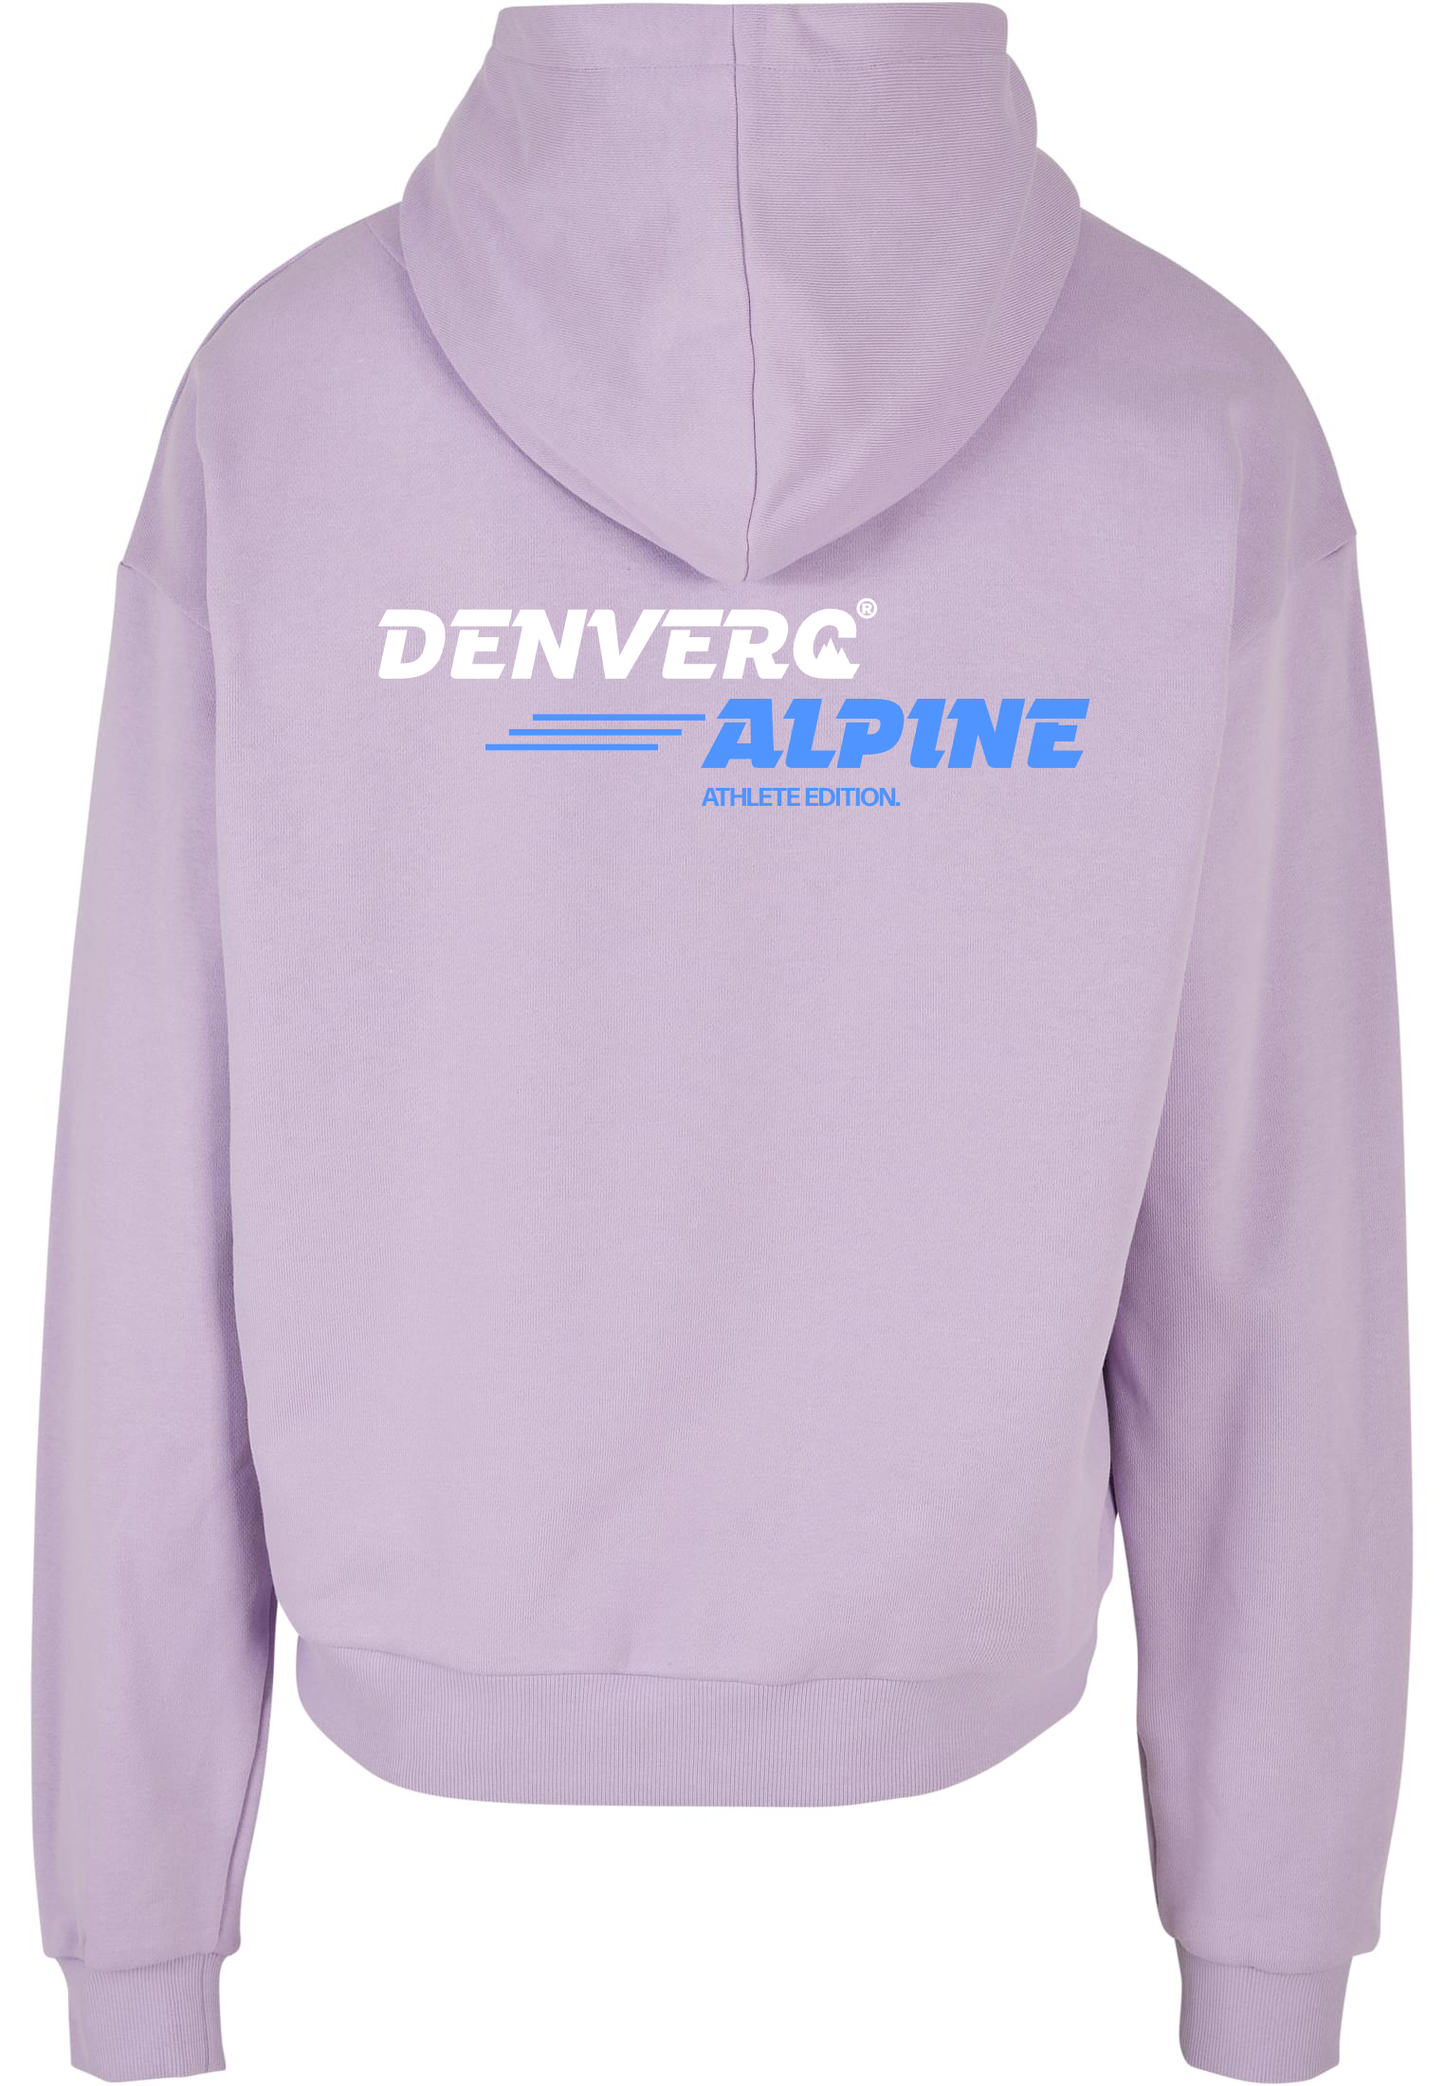 DENVERC ALPINE Athlete Hoodie Purple